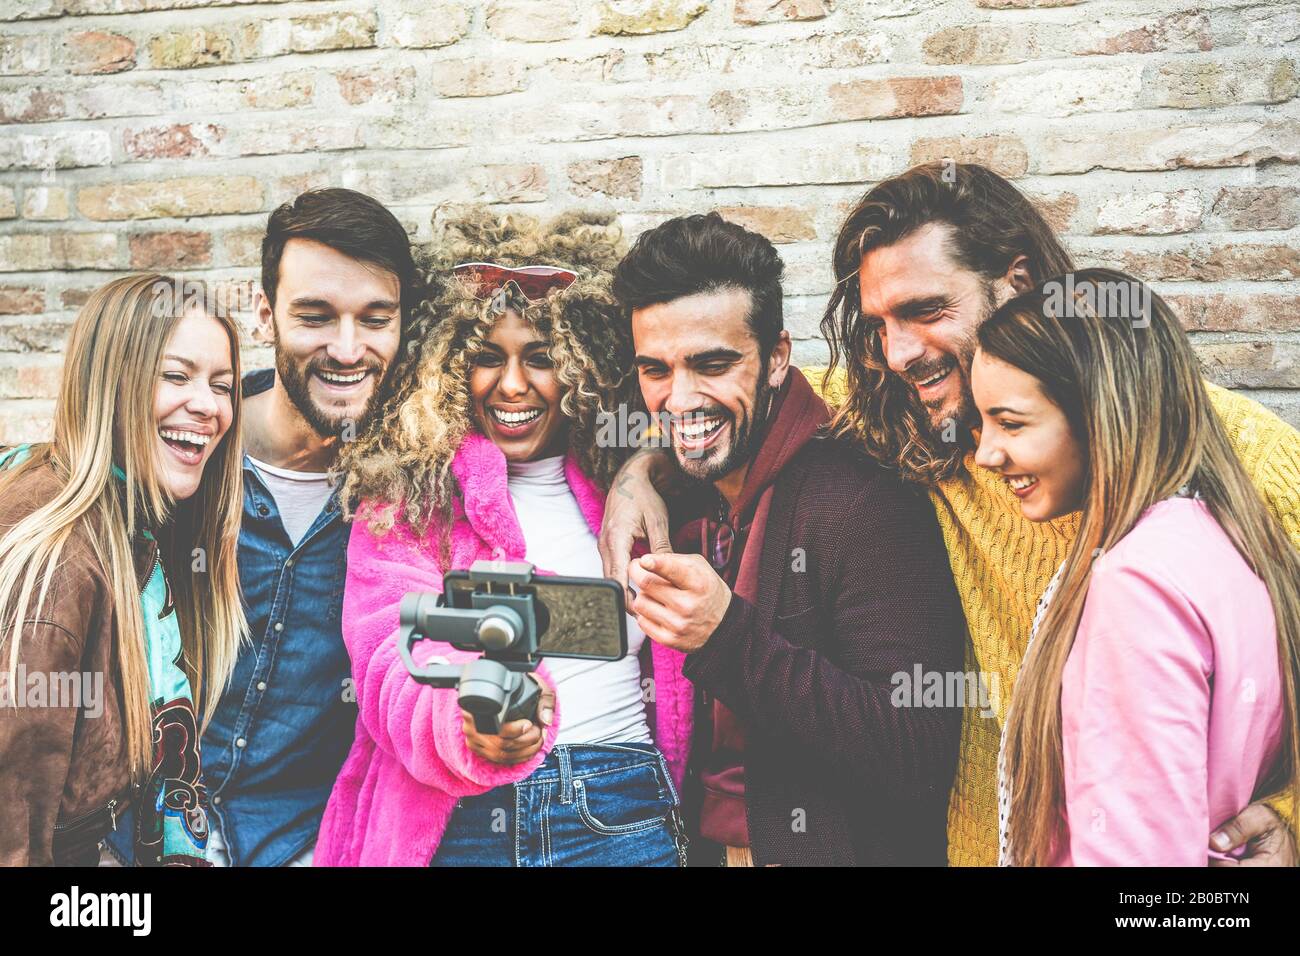 Fröhlicher Vlogger, der mit Freunden Videofeeds über Smartphone im Freien macht - Junge Leute haben Spaß mit neuen Technologietrends - Jugend-Lifestyle und Socia Stockfoto